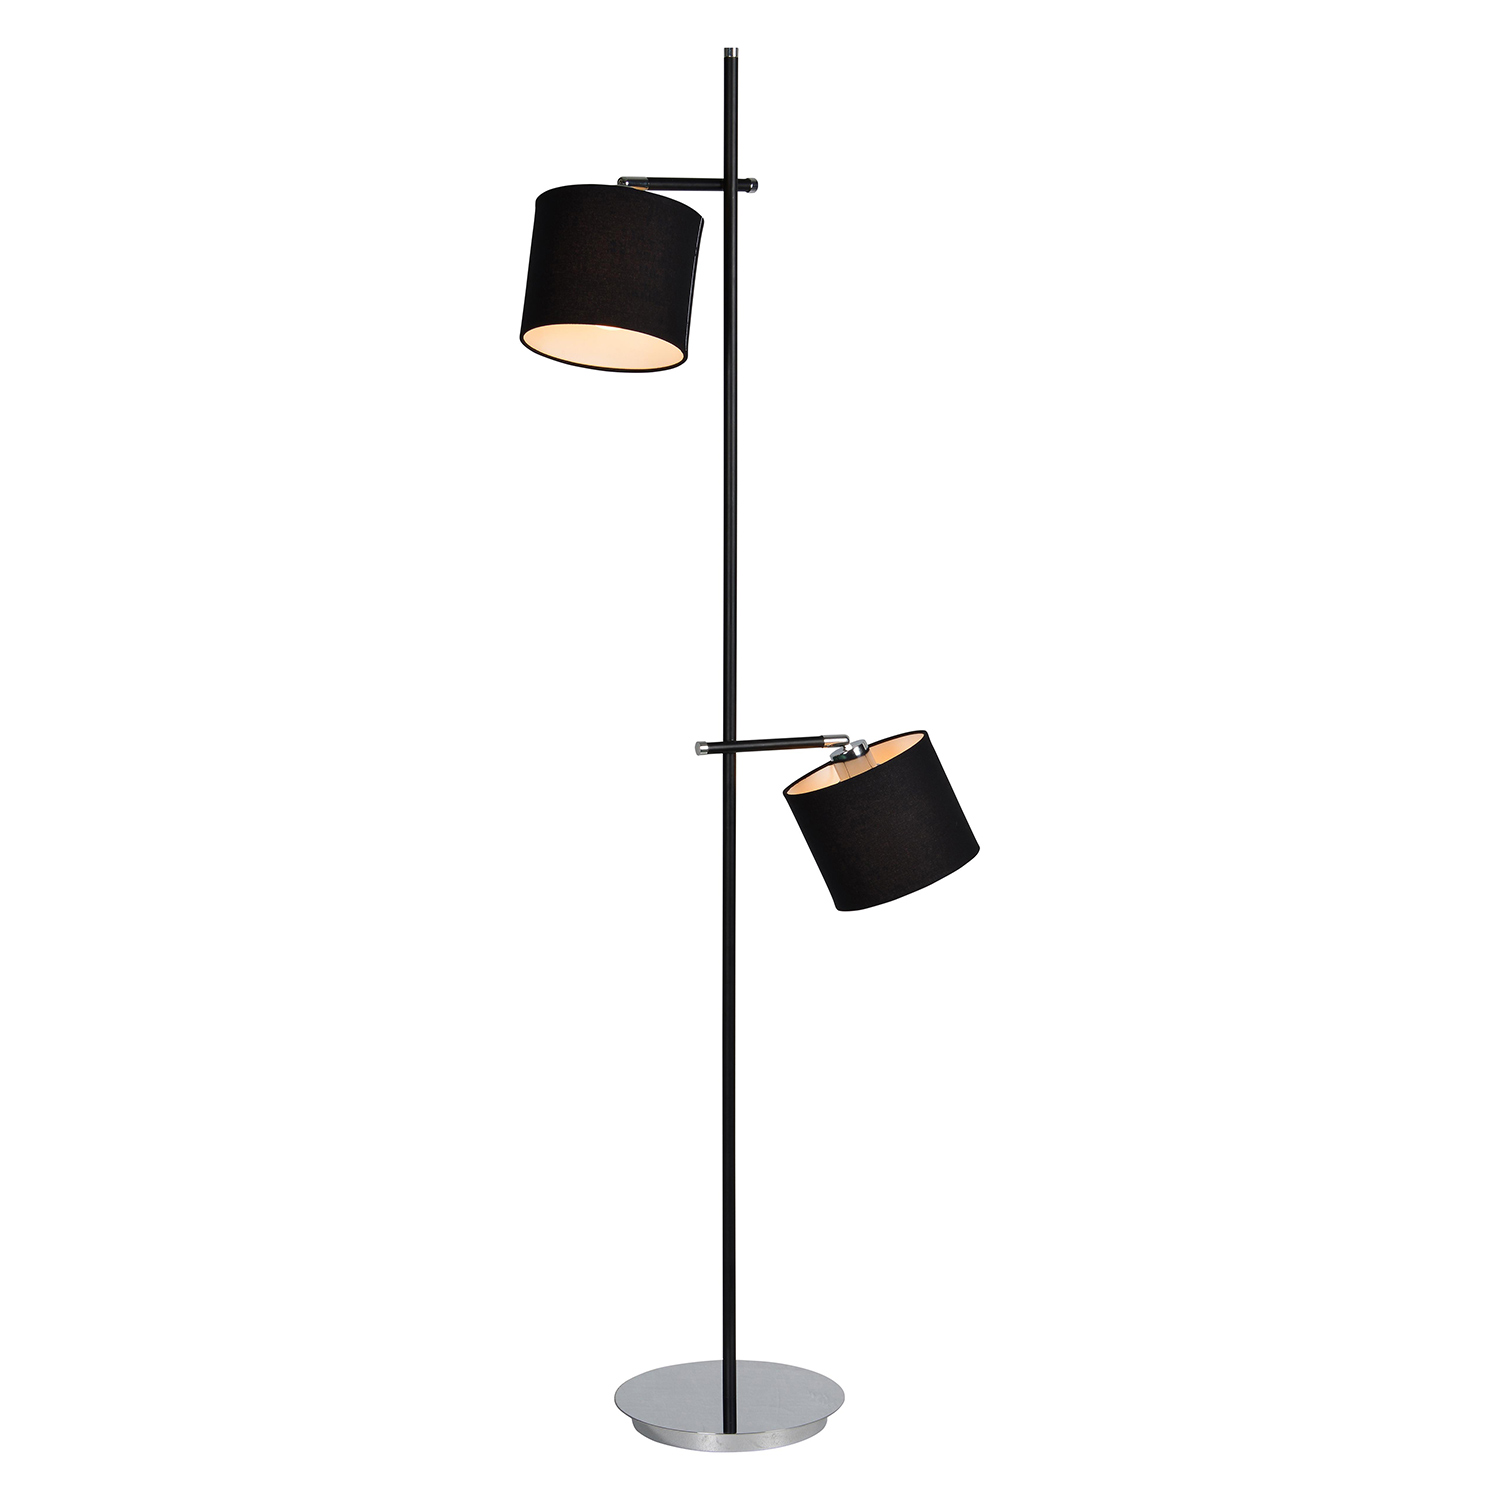 Ren-Wil Renfrew Floor Lamp - Matte Black/Chrome